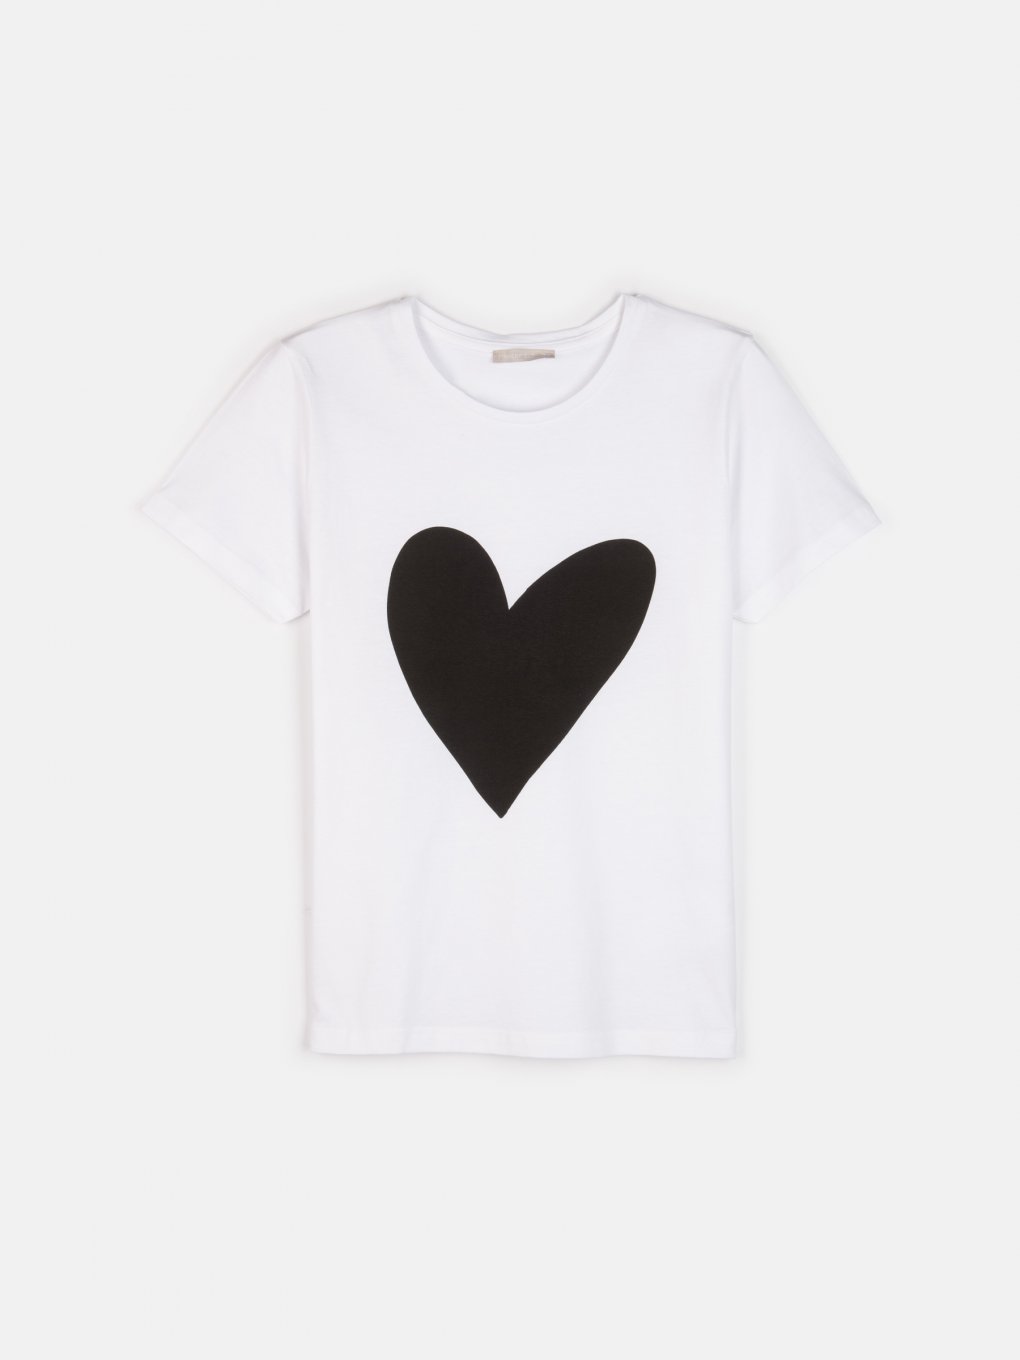 Bavlnené tričko s potlačou srdca